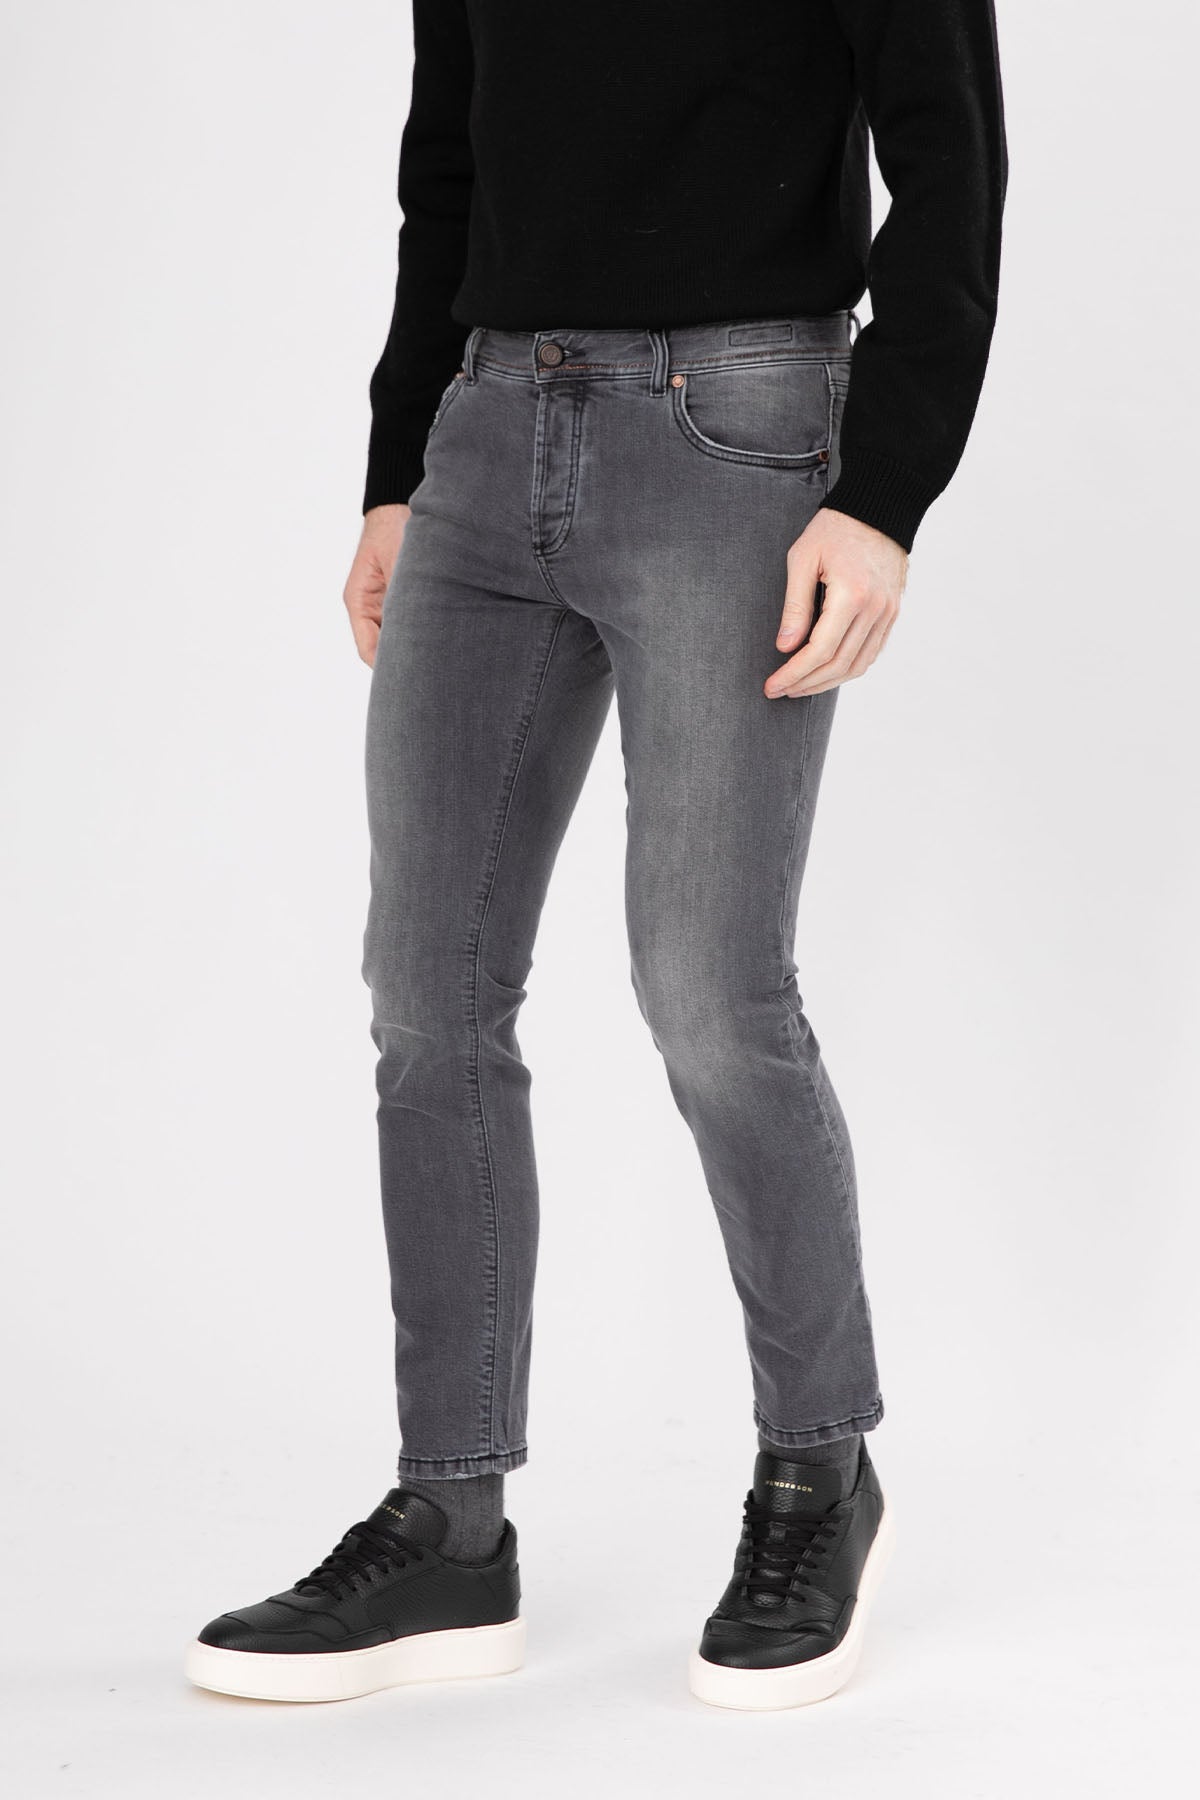 Richard J. Brown Tokyo Slim Fit Jeans